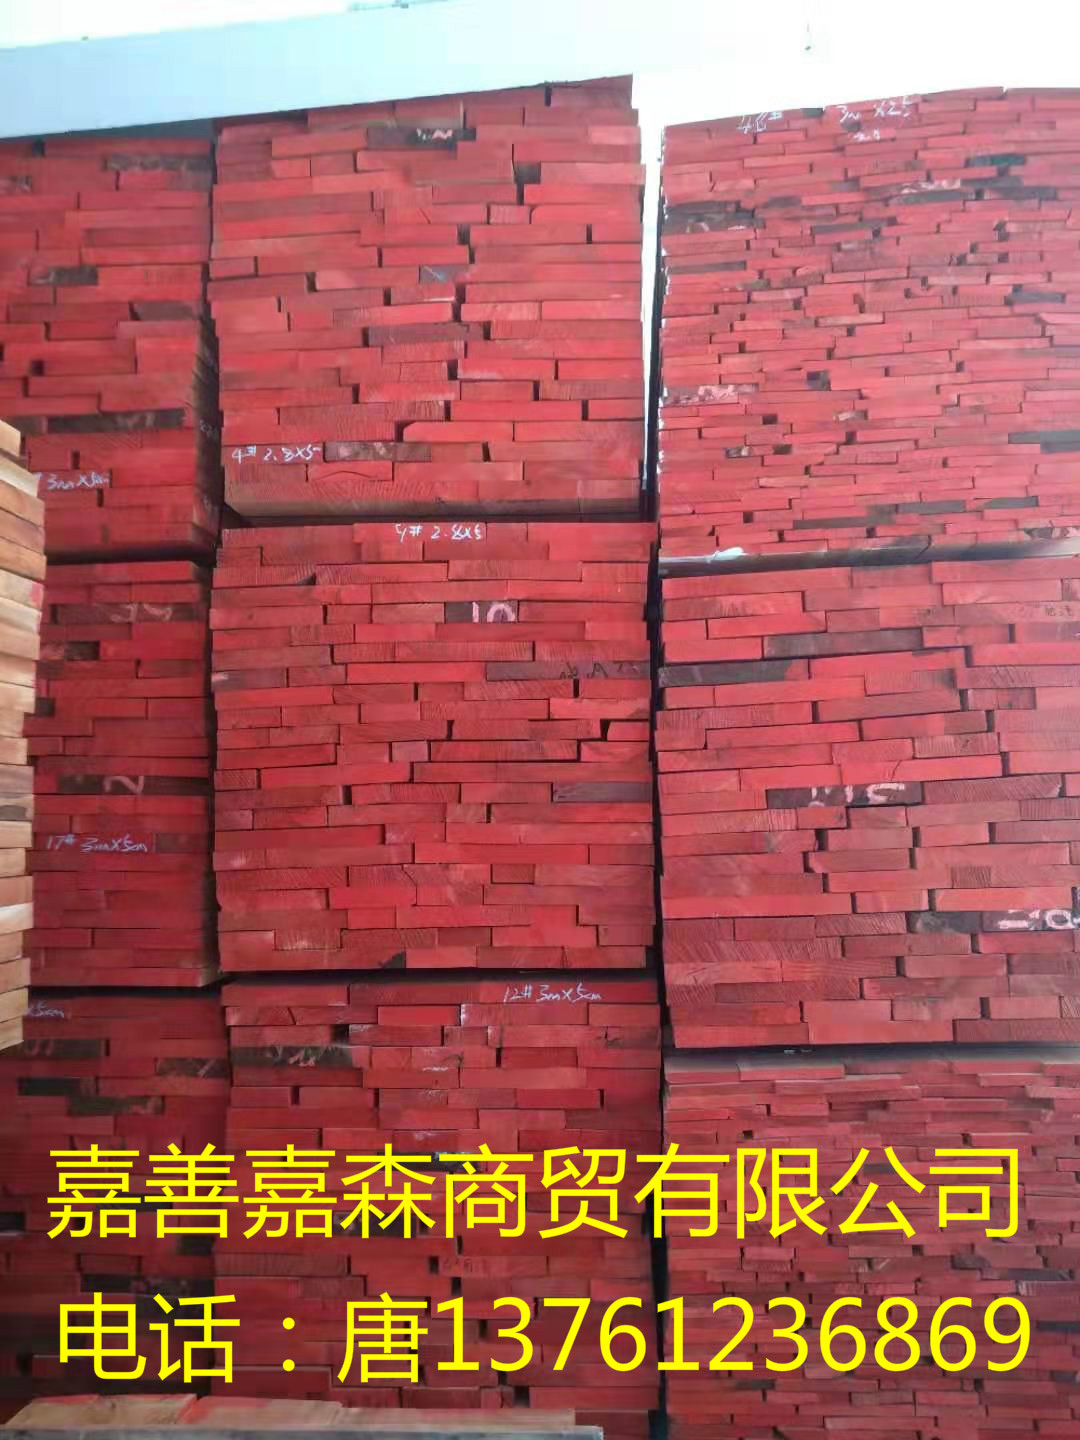 无节东南亚桃花芯厂家直销 低价出售优质椴木板材